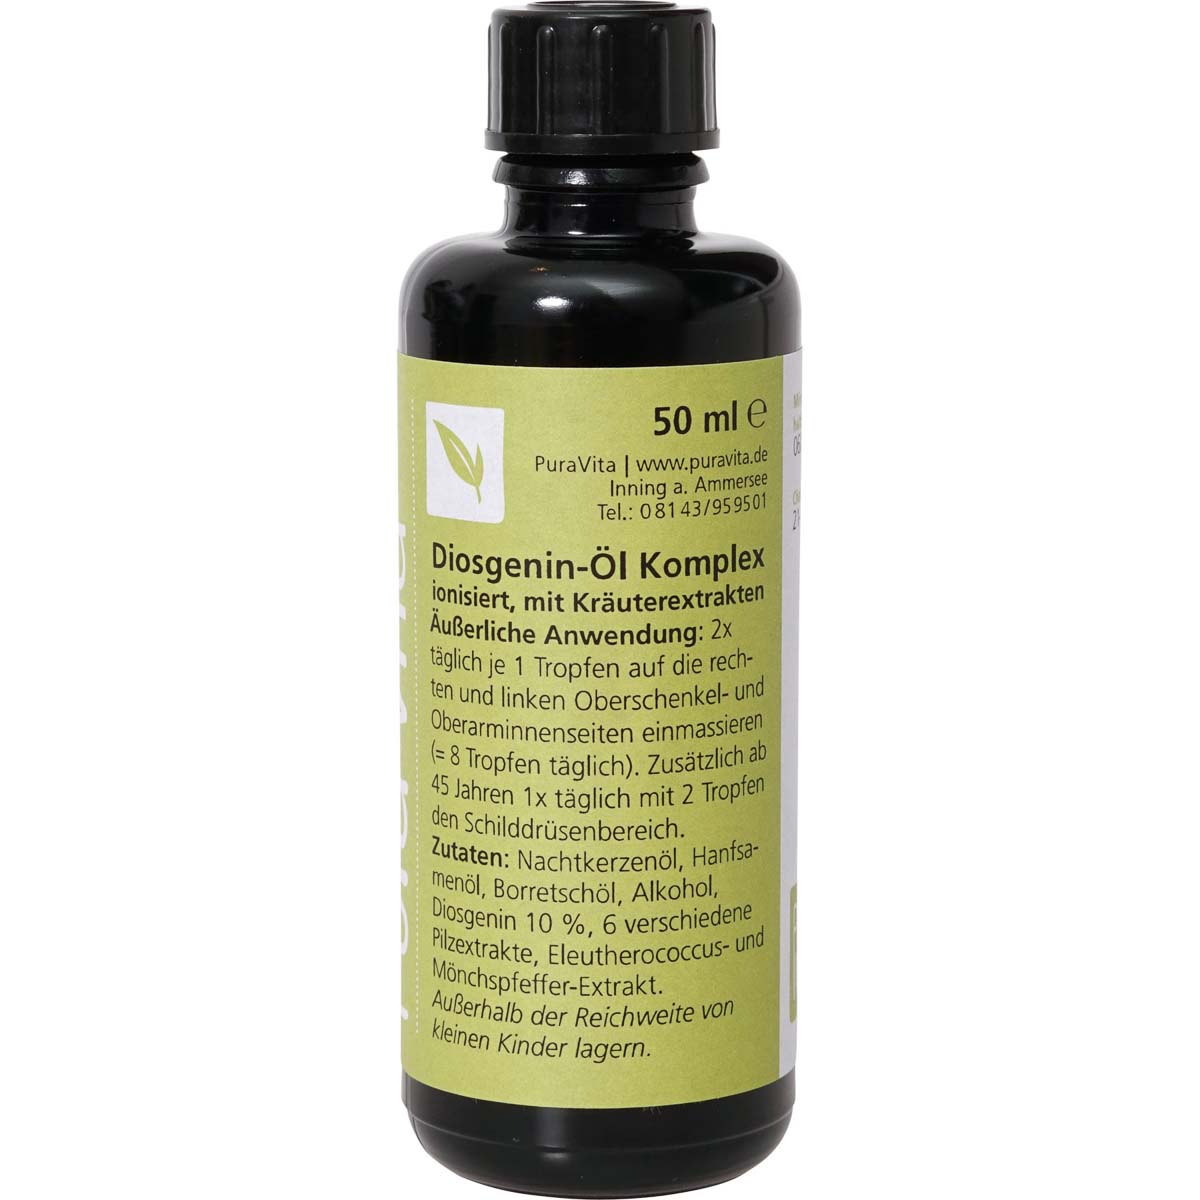 Diosgenin-Öl Komplex (Yams-Öl) 50 ml